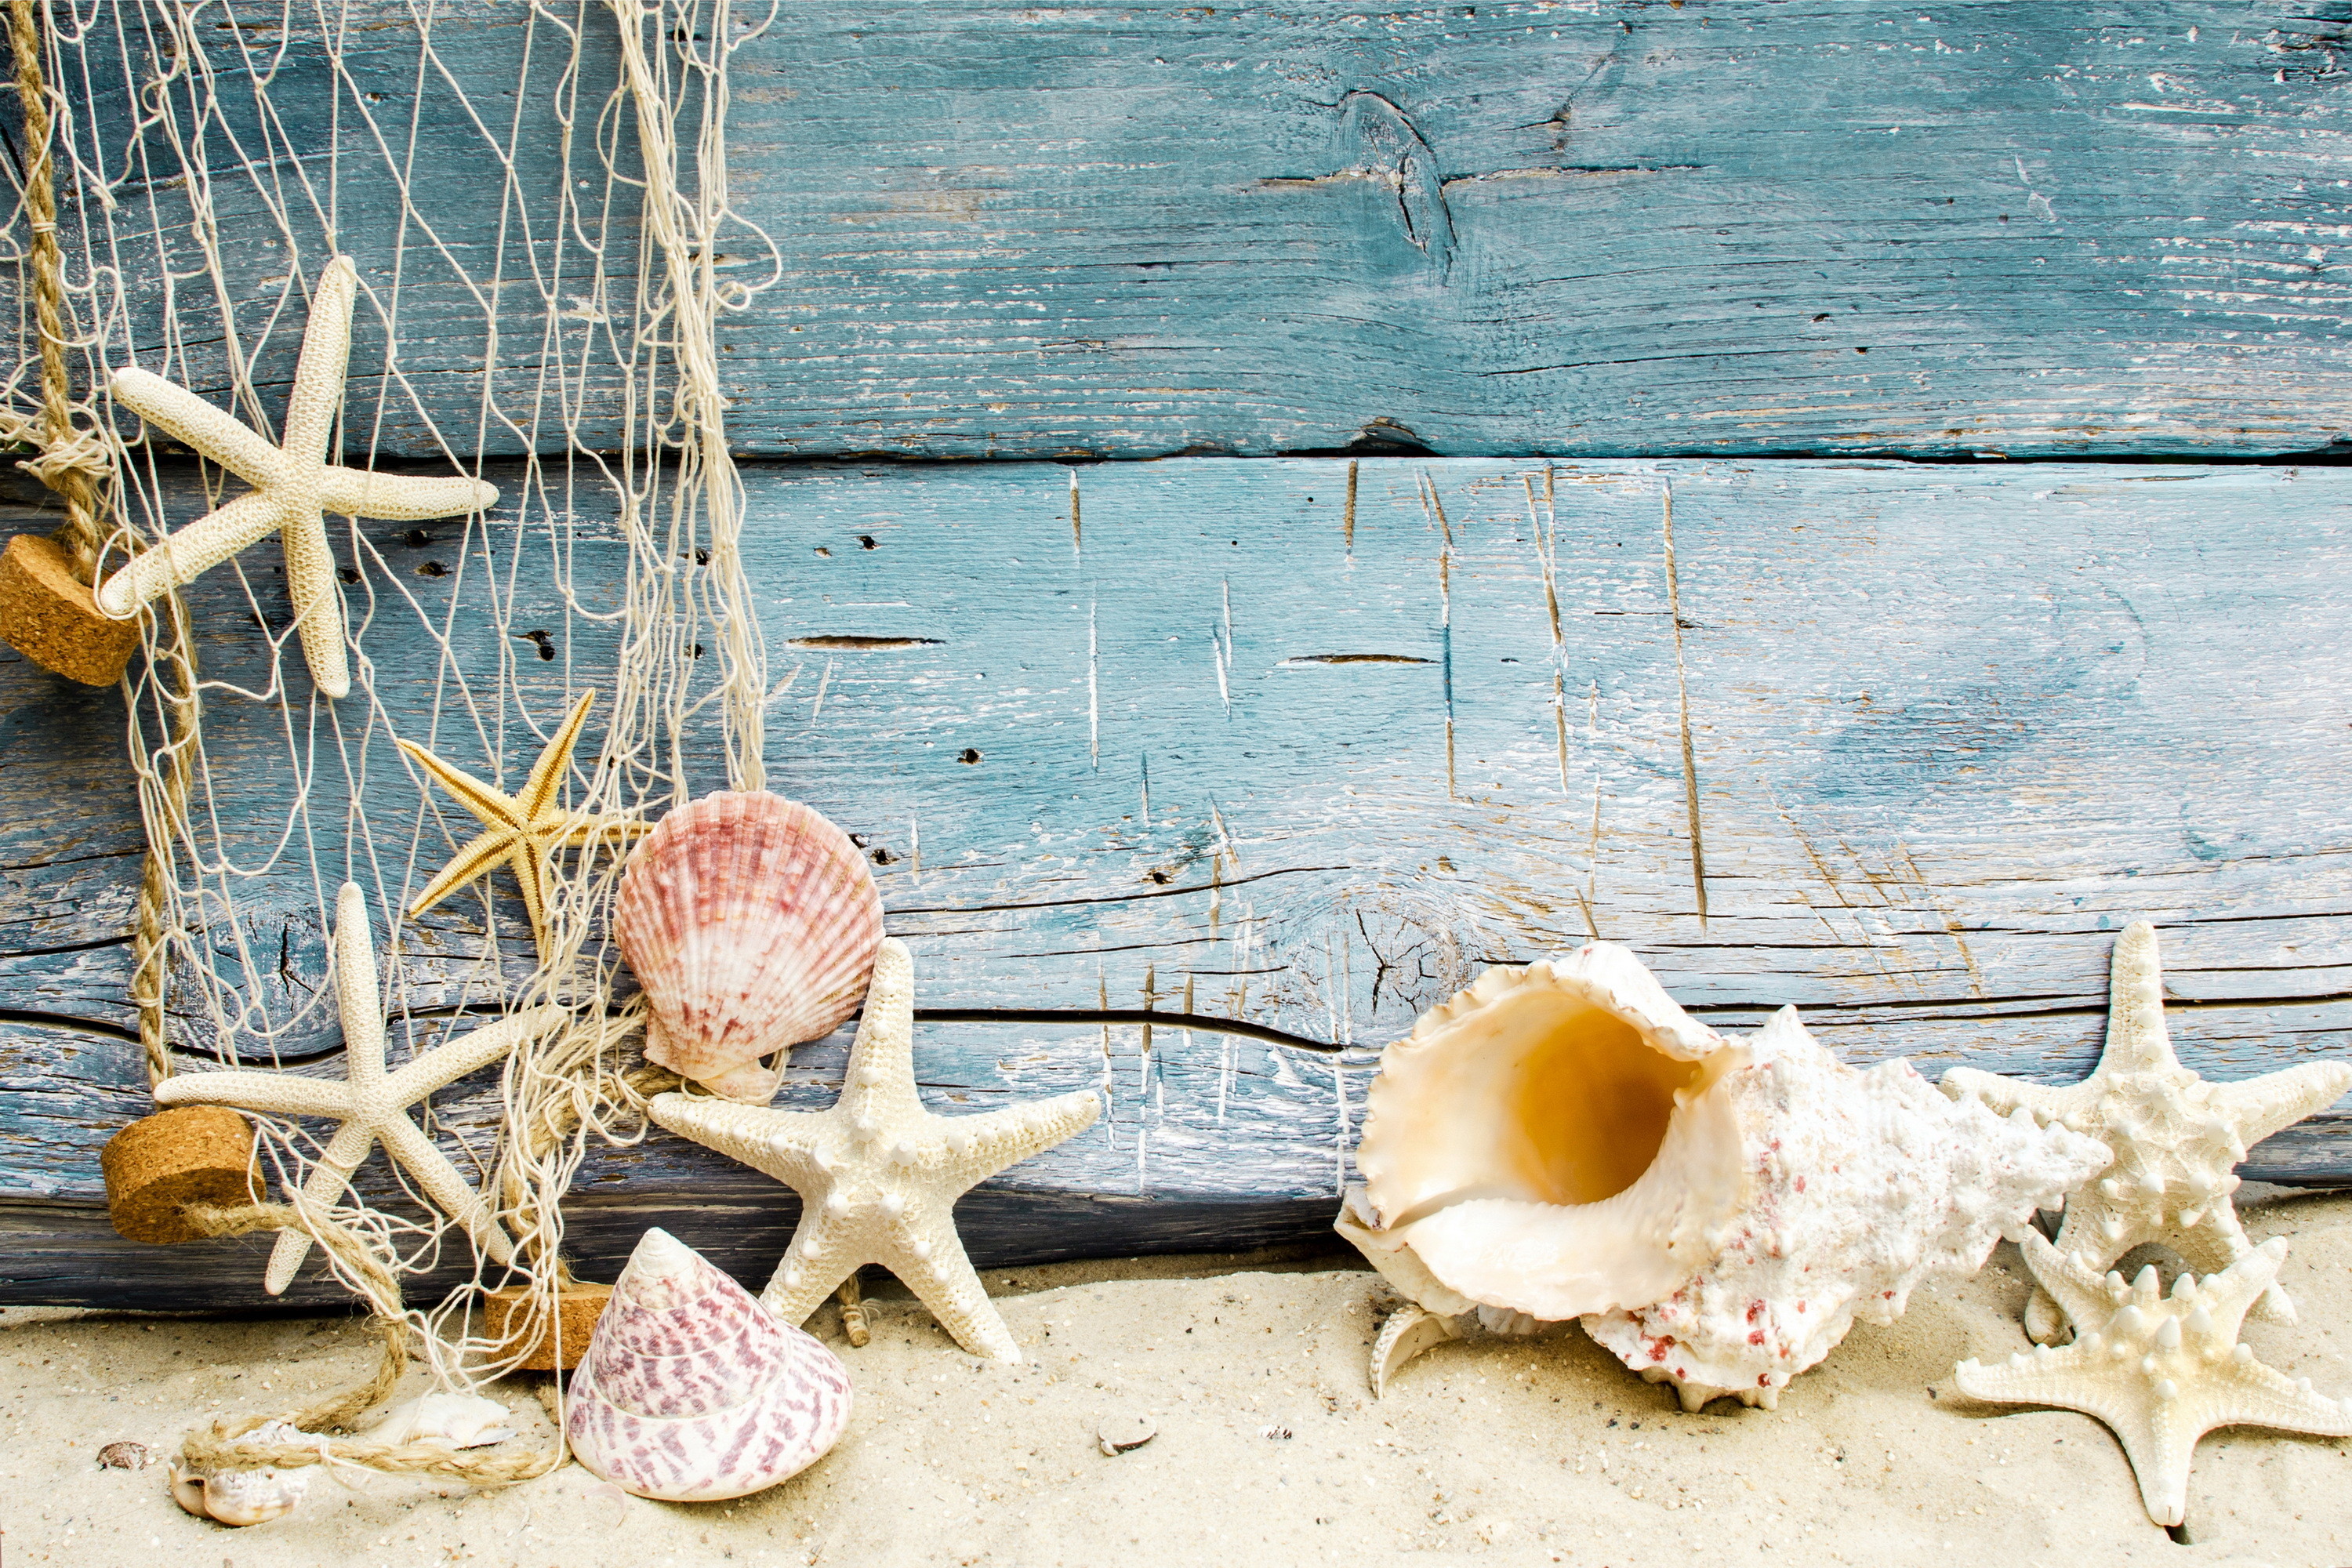 Beach Sand With Shells - Beach Shells - 3000x2000 Wallpaper 